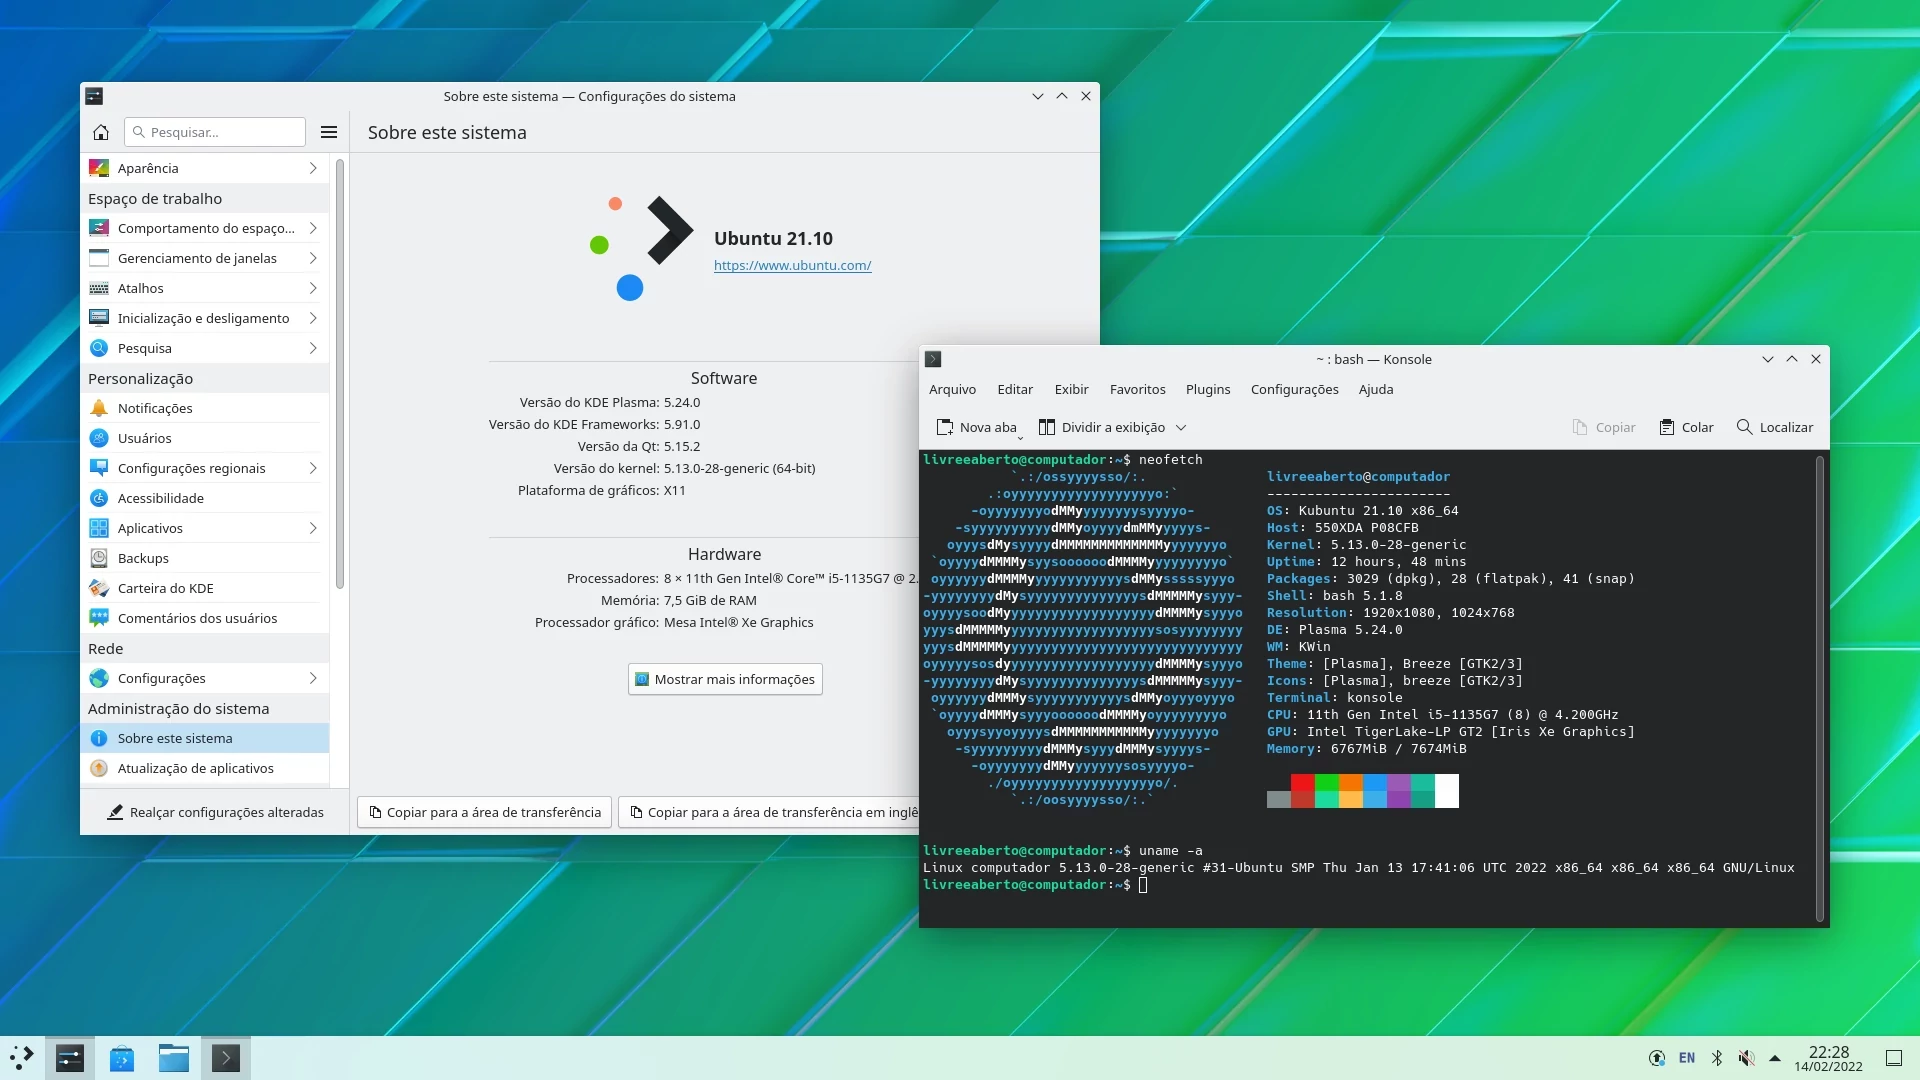 Tela mostrando informações nas configurações com Ubuntu 21.10, Plasma KDE 5.24, e um terminal mostrando informações do comando neofetch e do comando uname